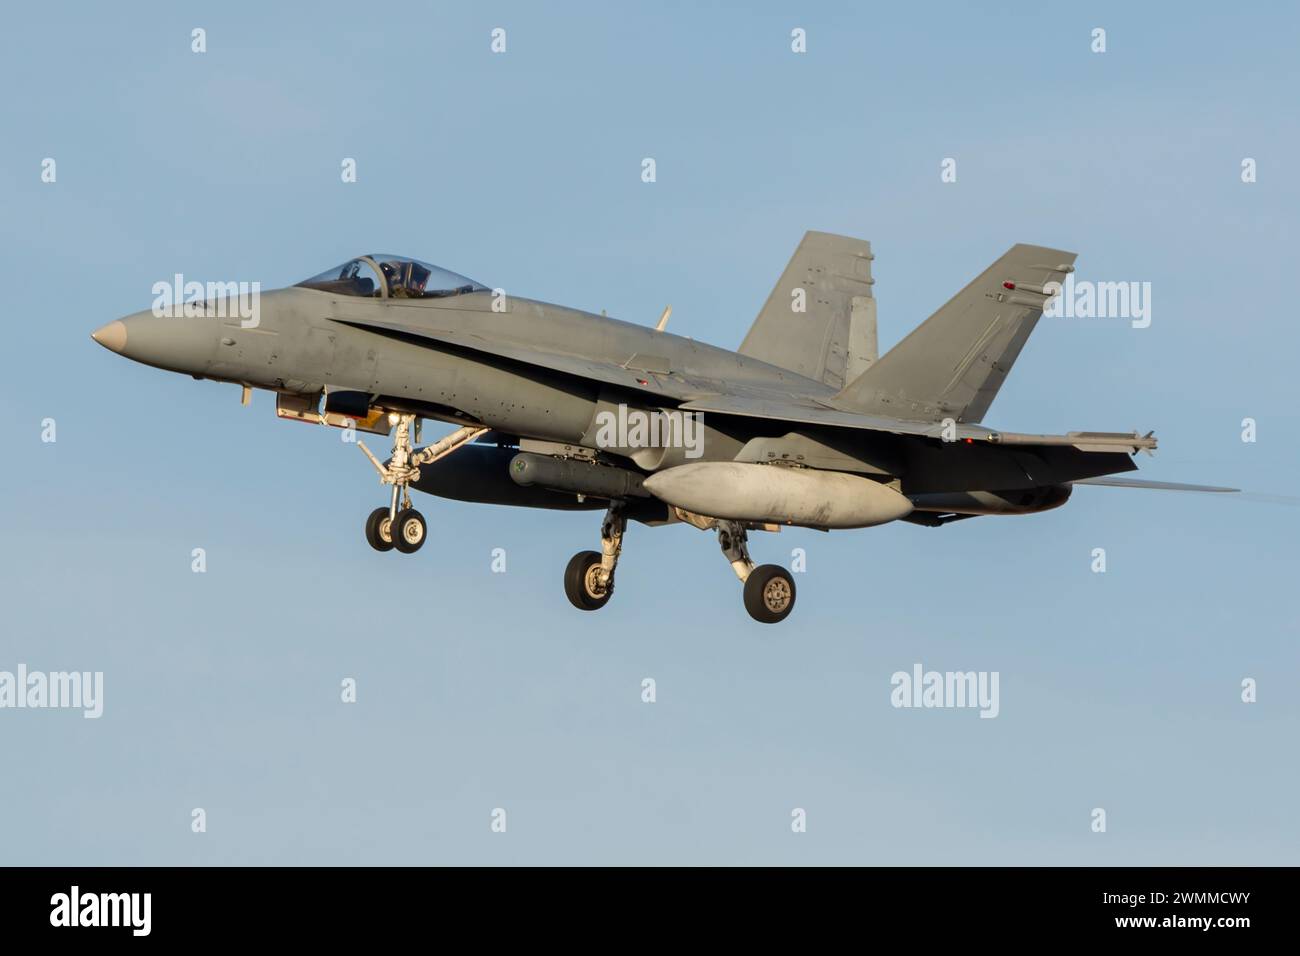 F-18 Hornet fighter jet landing at sunset Stock Photo